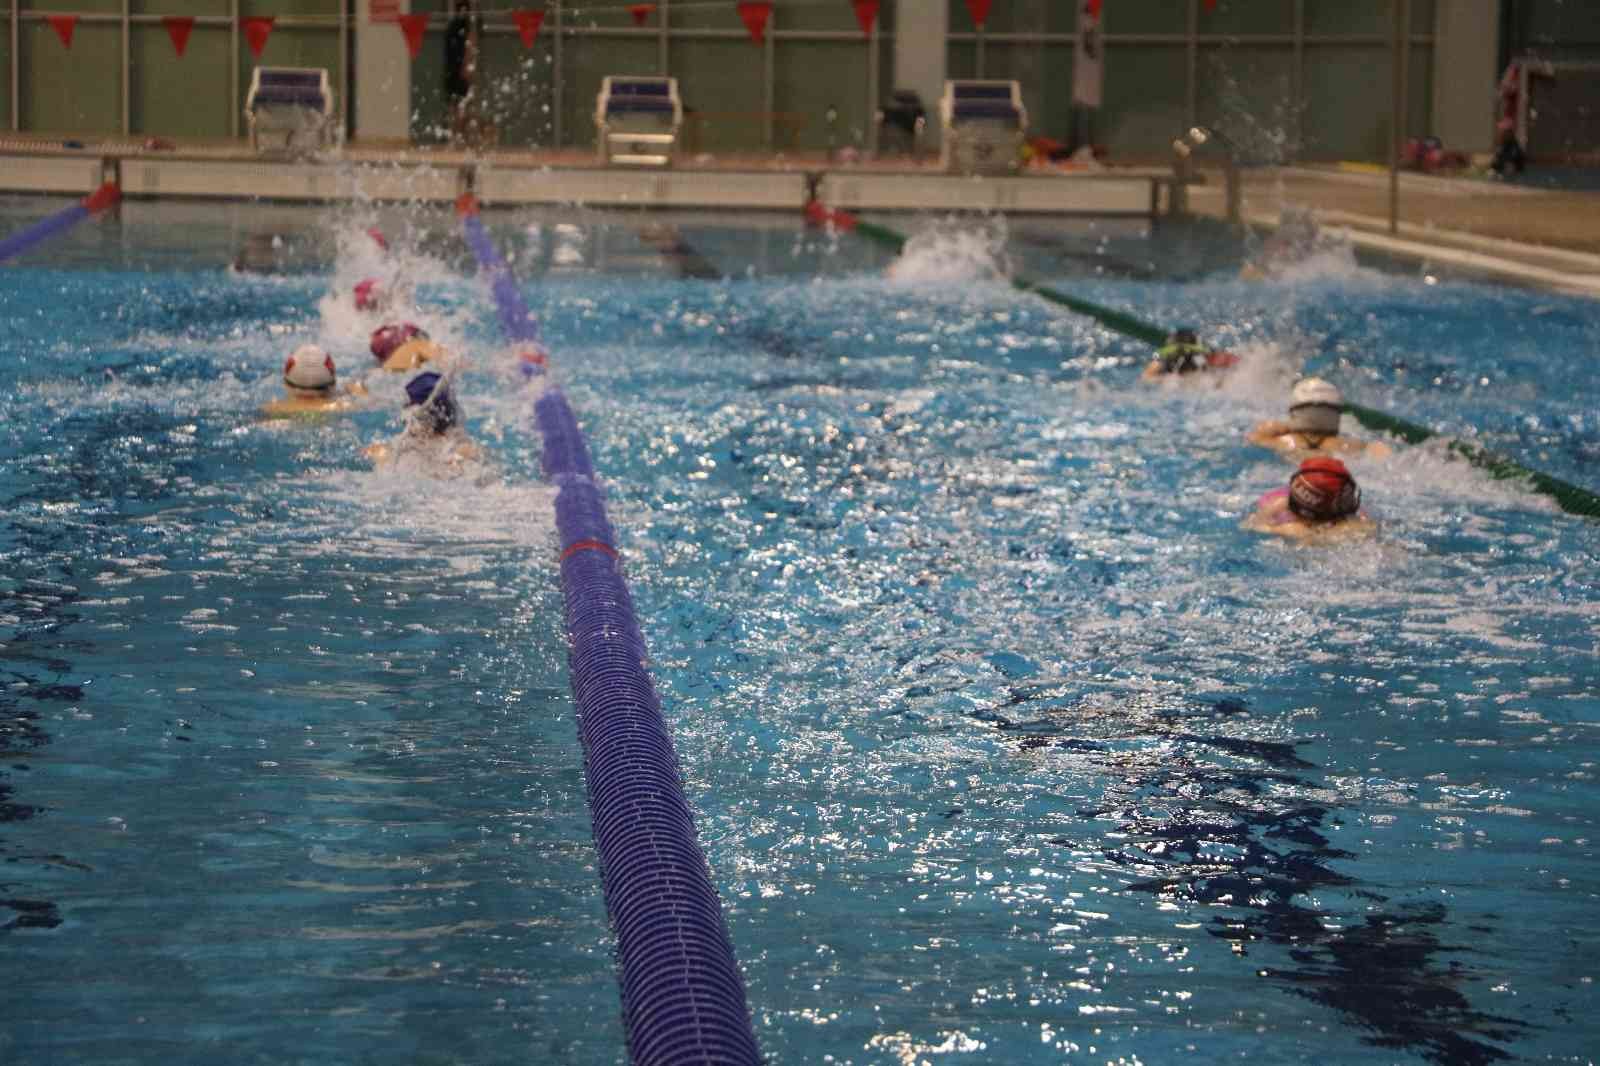 Aydın’a 10 adet yarı olimpik yüzme havuzu yapılacak #aydin